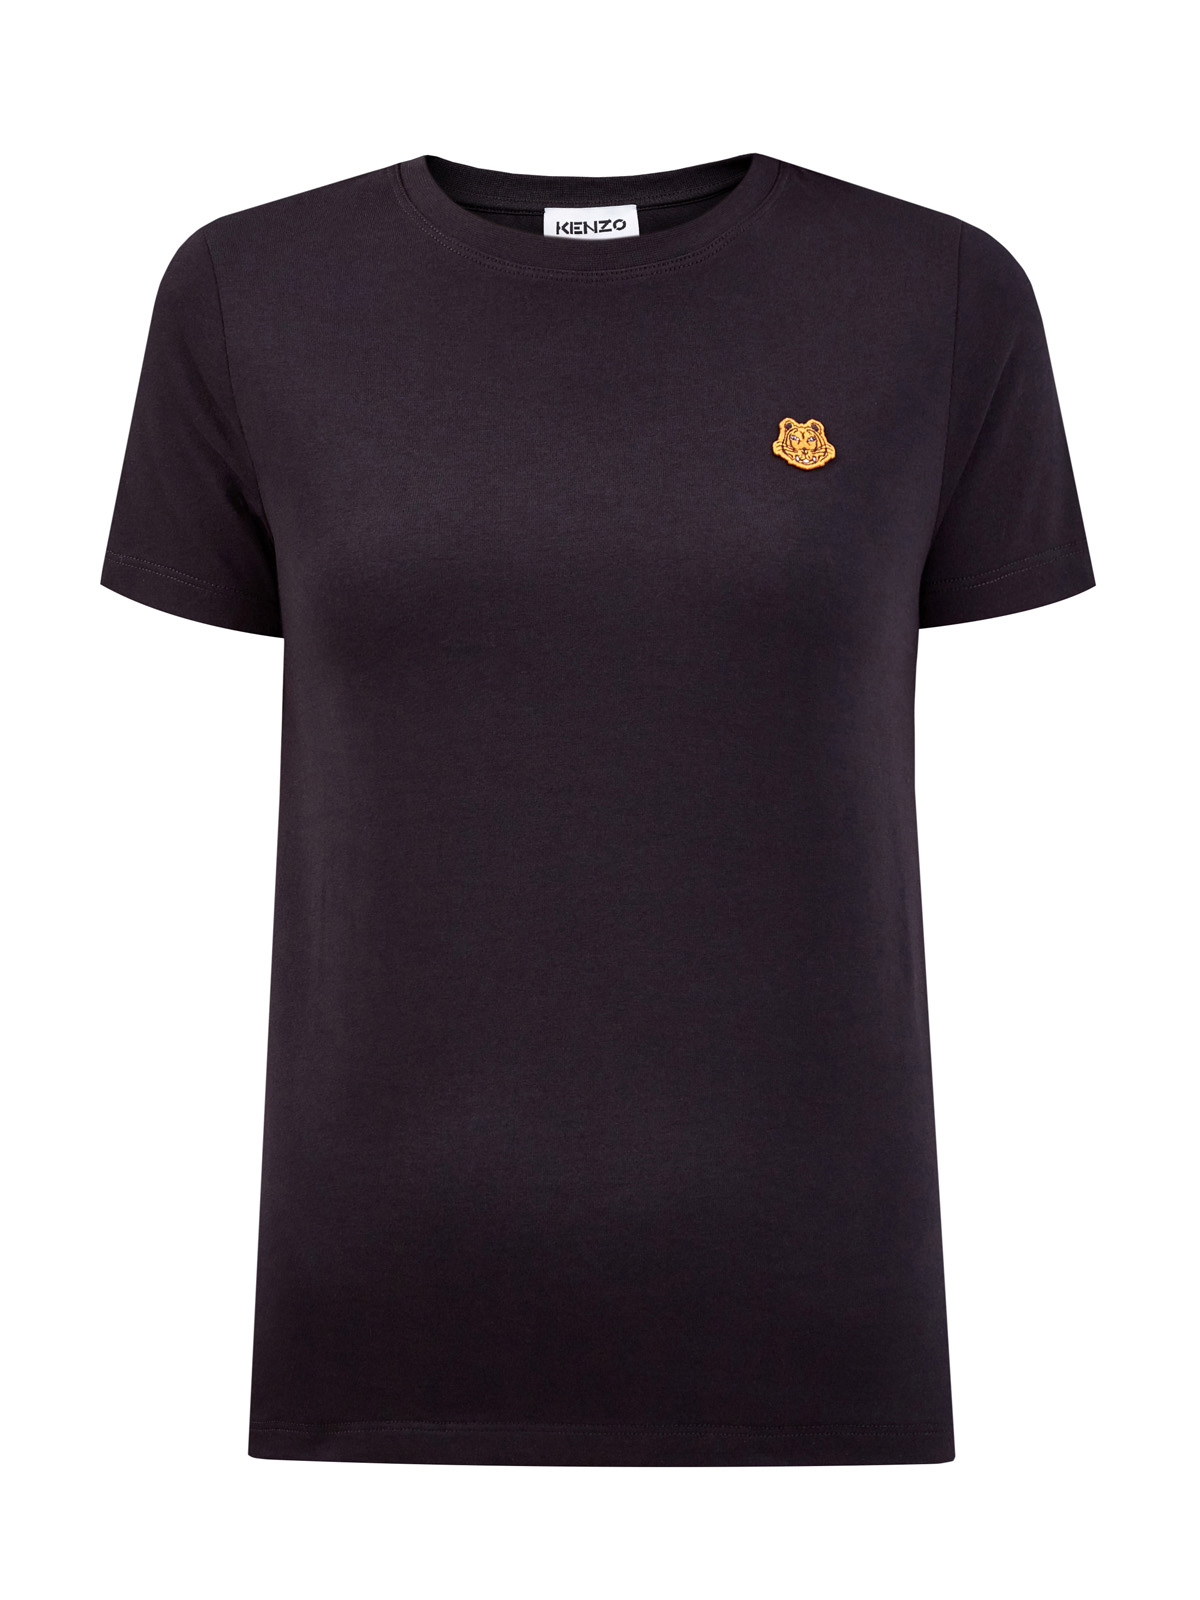 Хлопковая футболка из гладкого джерси с вышитой эмблемой бренда KENZO, цвет черный, размер S;L;XS - фото 1